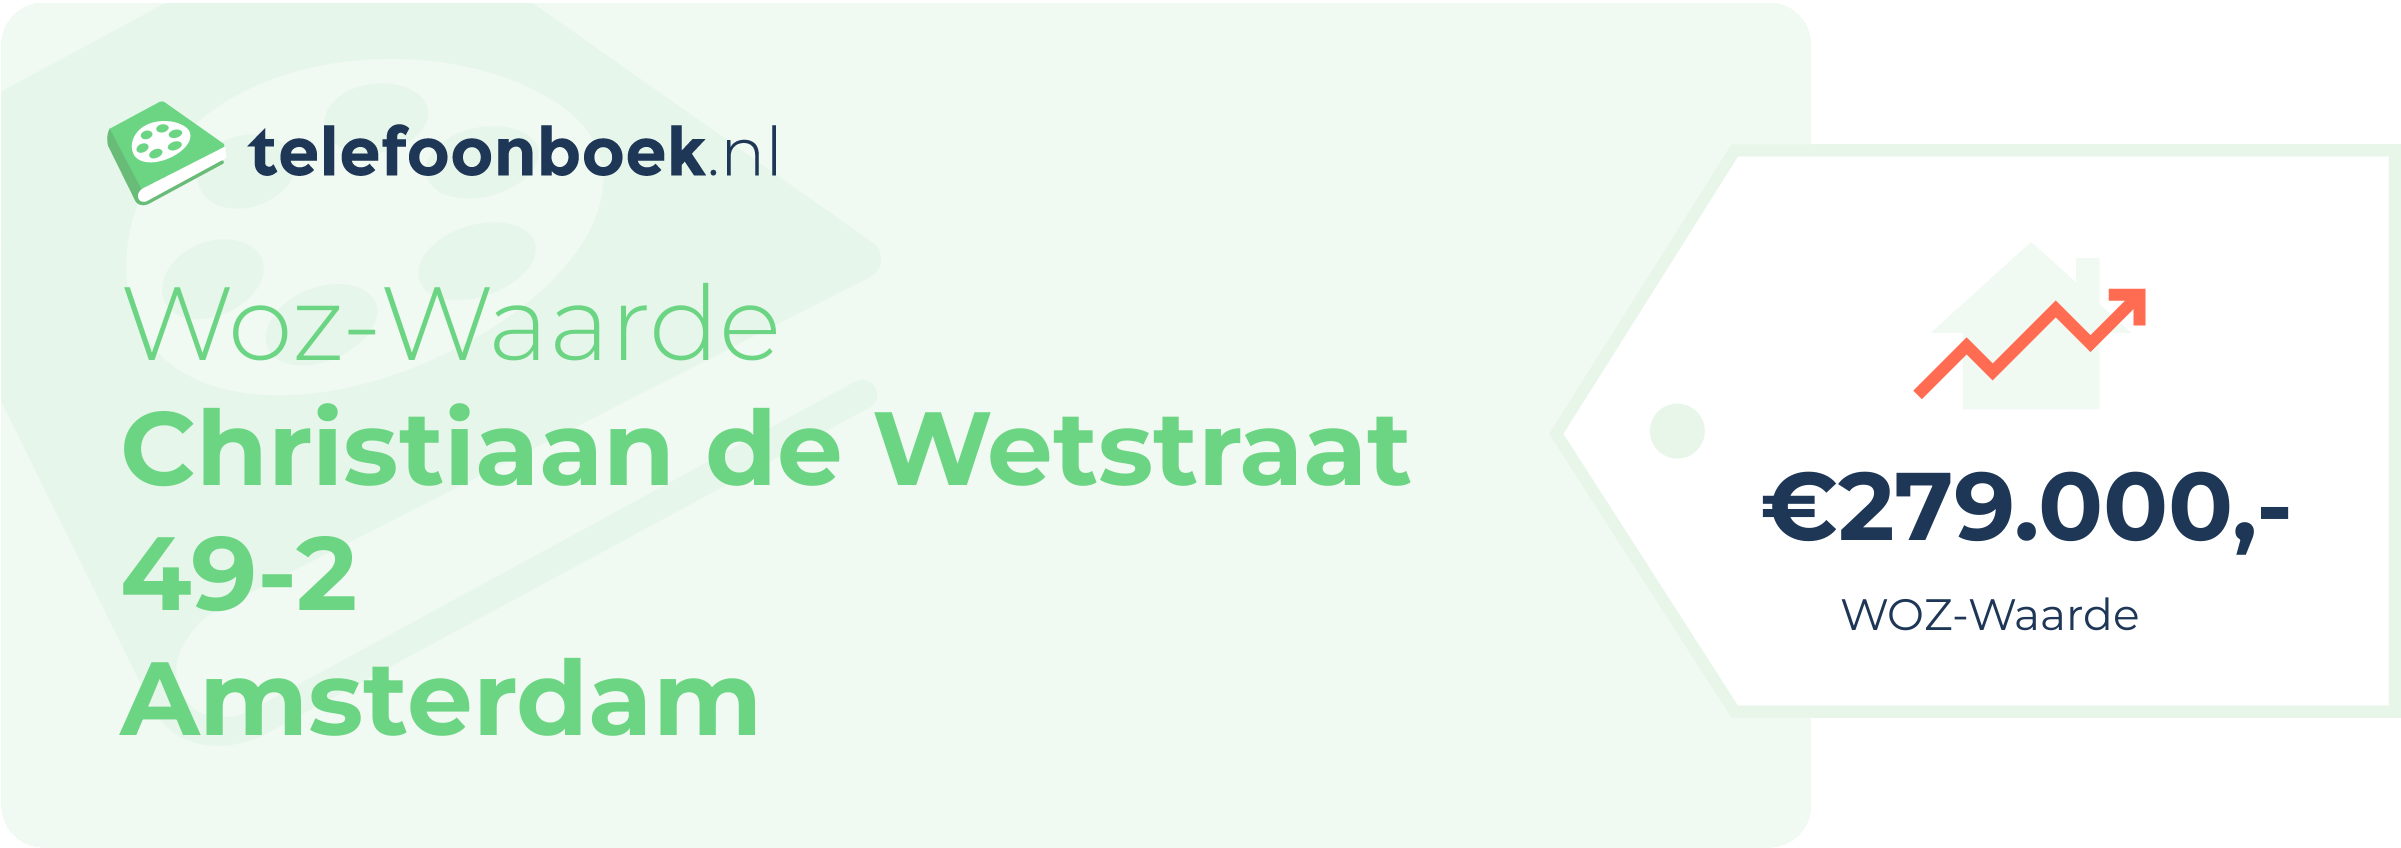 WOZ-waarde Christiaan De Wetstraat 49-2 Amsterdam